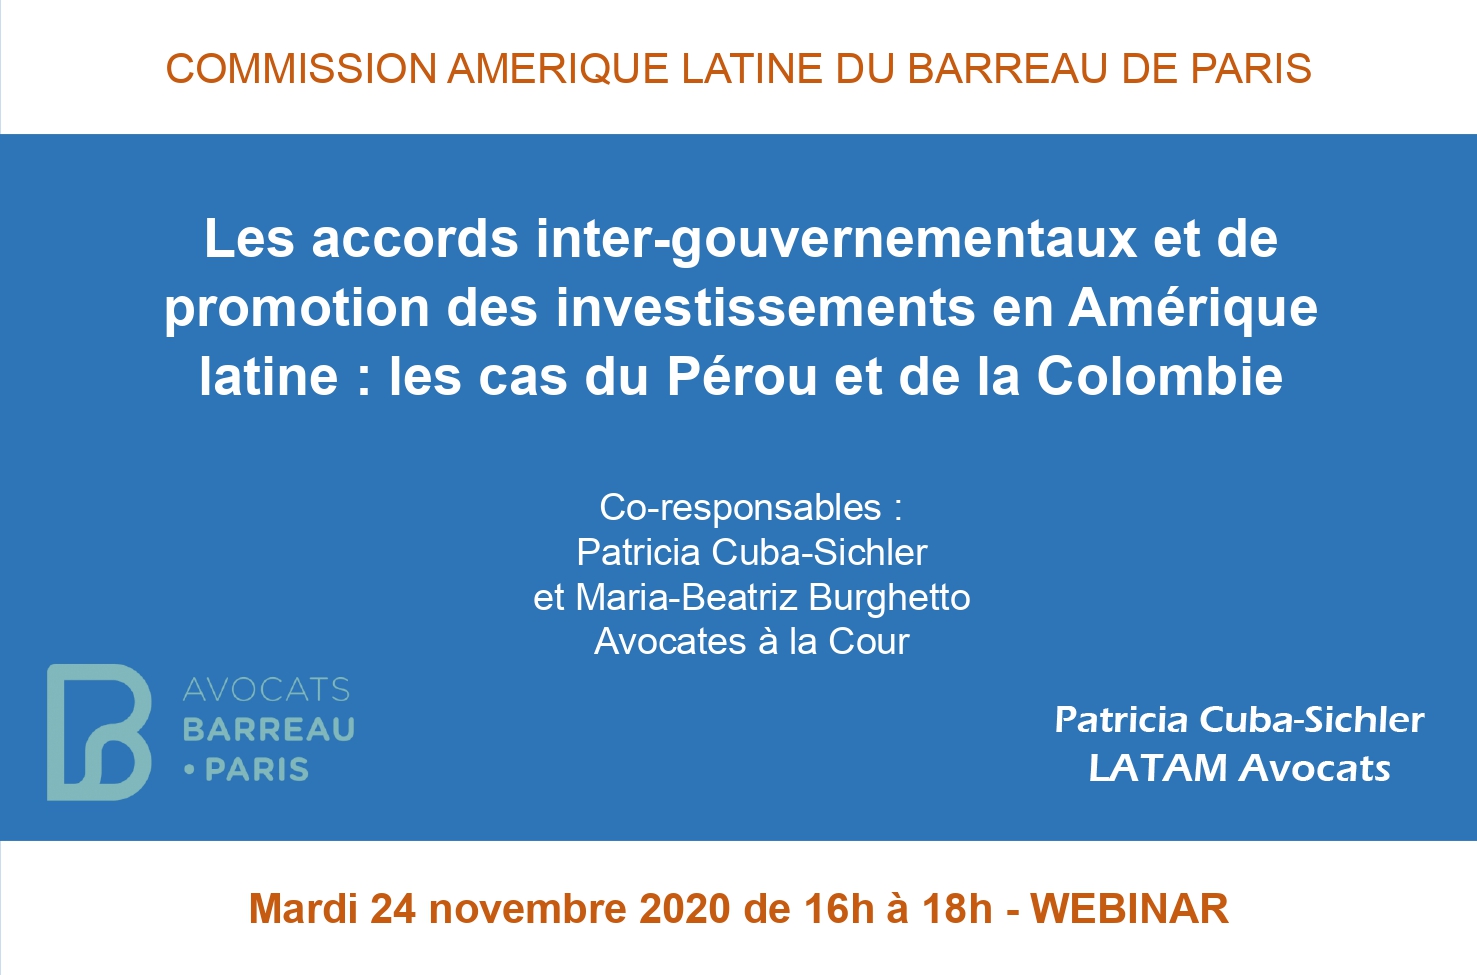 Accords gouvernement à gouvernement G2G et de promotion des investissements en Amérique latine EGIS Pérou France